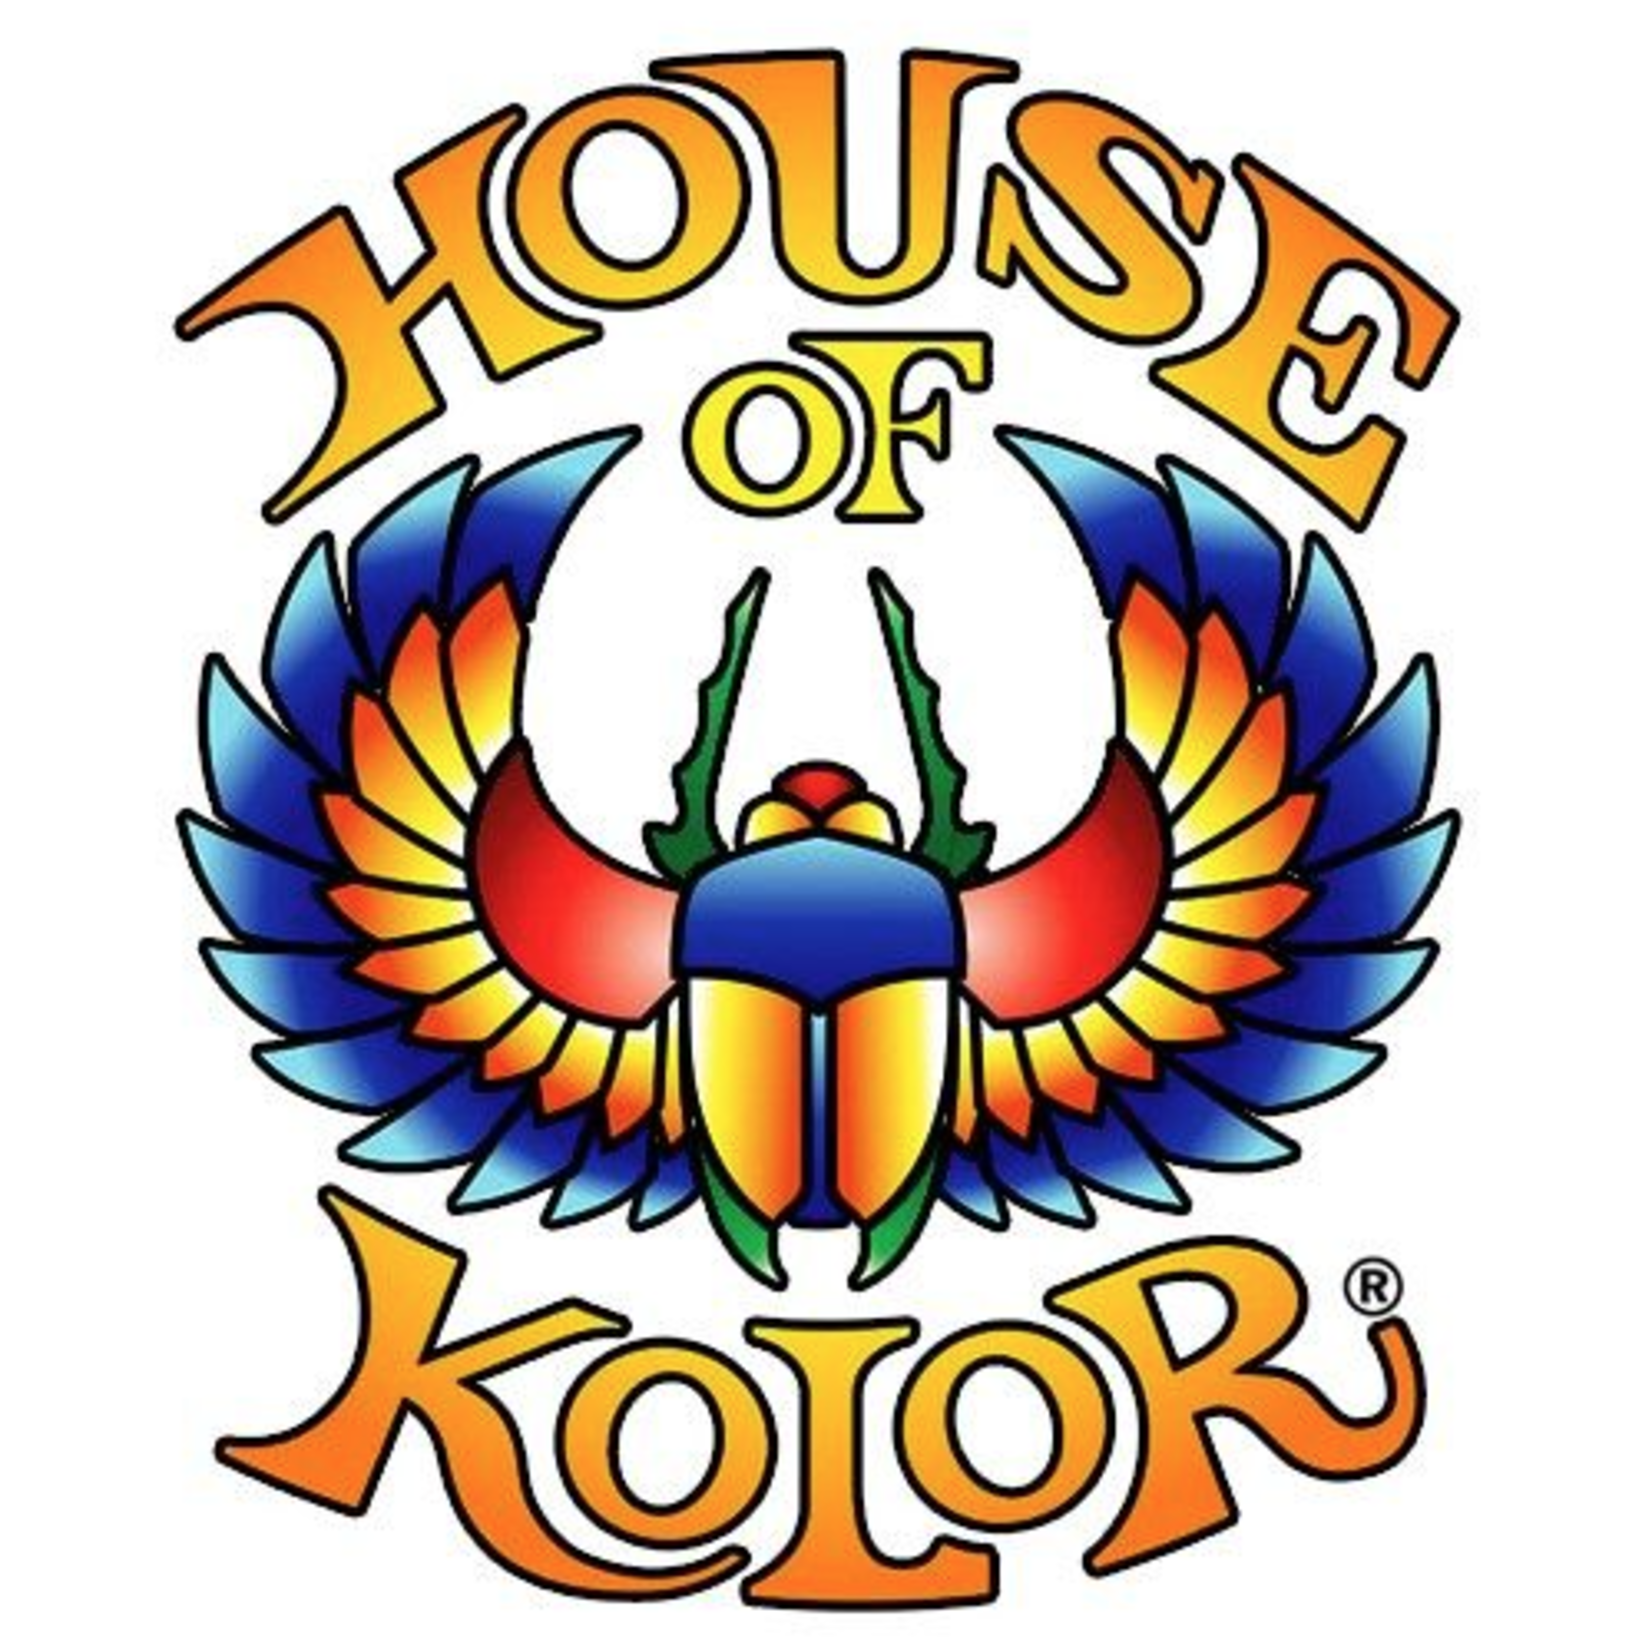 House of Kolor House of Kolor SHIMRIN2 Basecoat Karrier